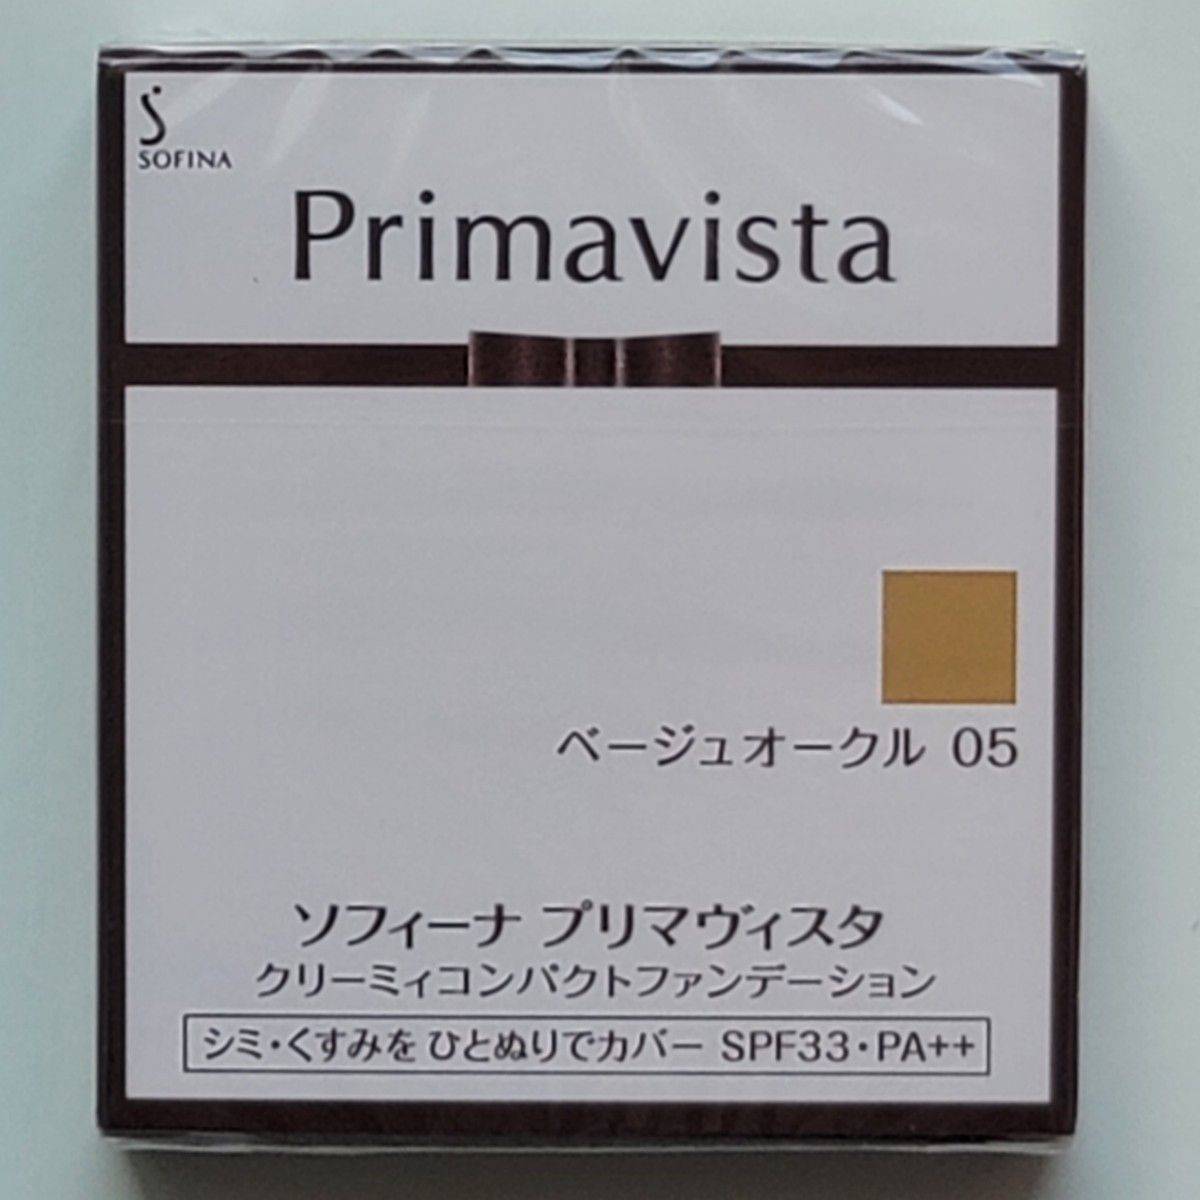 プリマヴィスタ クリーミィコンパクトファンデーション ベージュオークル 05